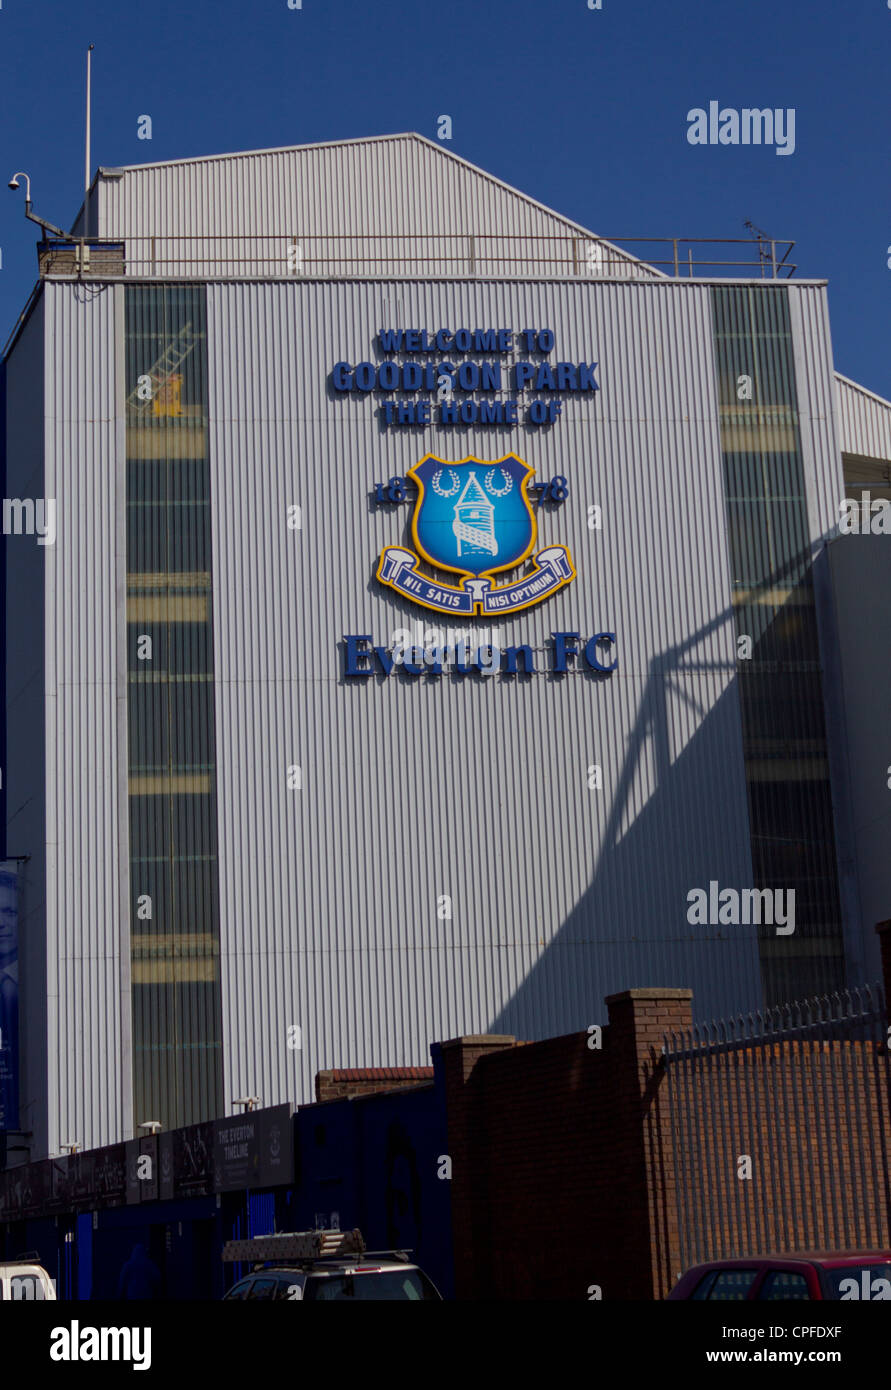 Extérieur de Goodison Park, Home Club de football Everton Banque D'Images